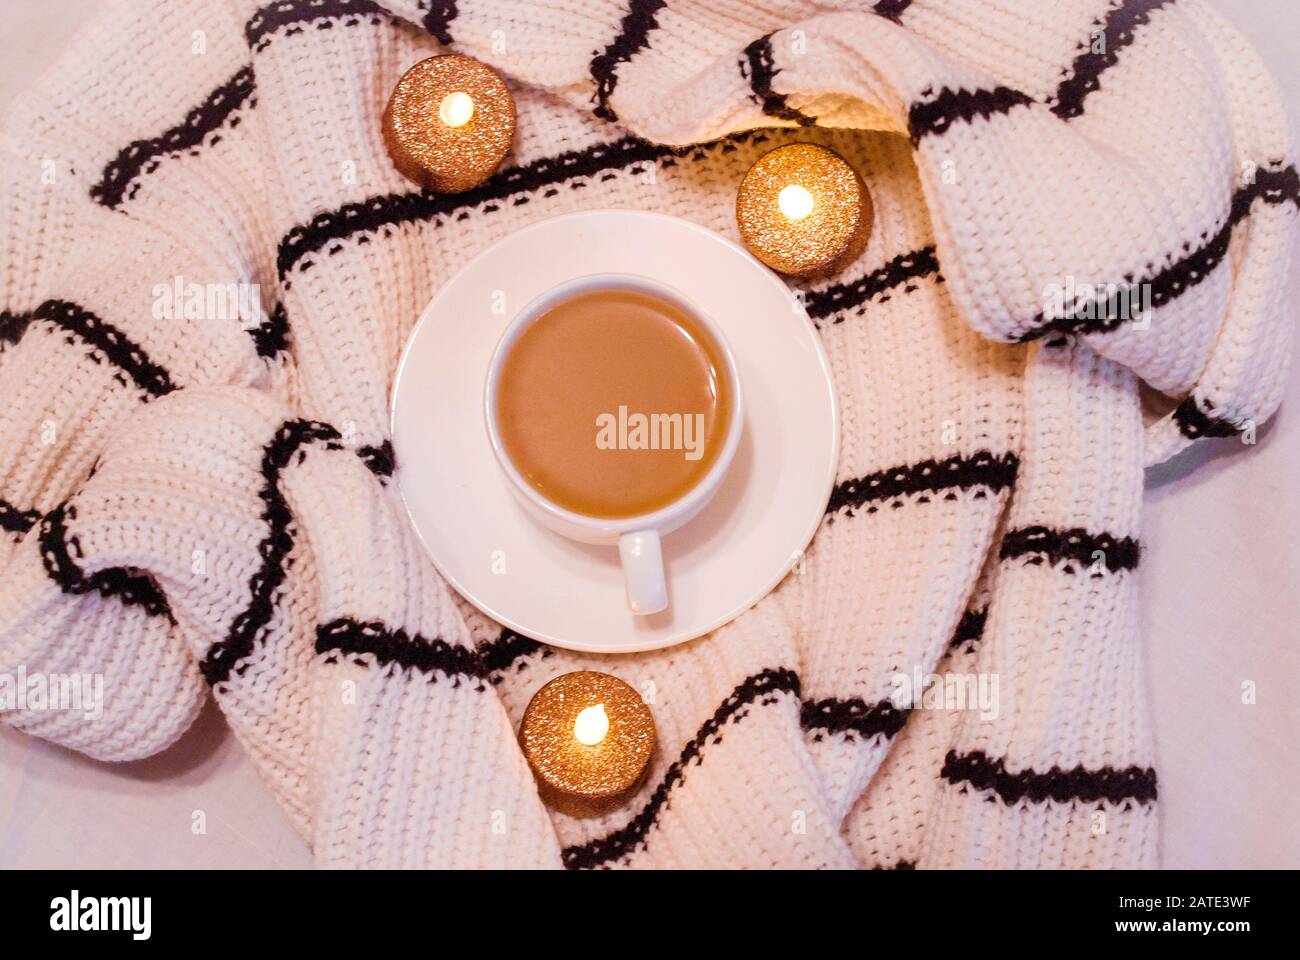 Weiße Porzellanbecher mit Kaffee mit Milch, Pullover, groben Textilien, schwarze und weiße Streifen sichere Kerzen, weißer Hintergrund. Homeless. Trend Jugend pho Stockfoto